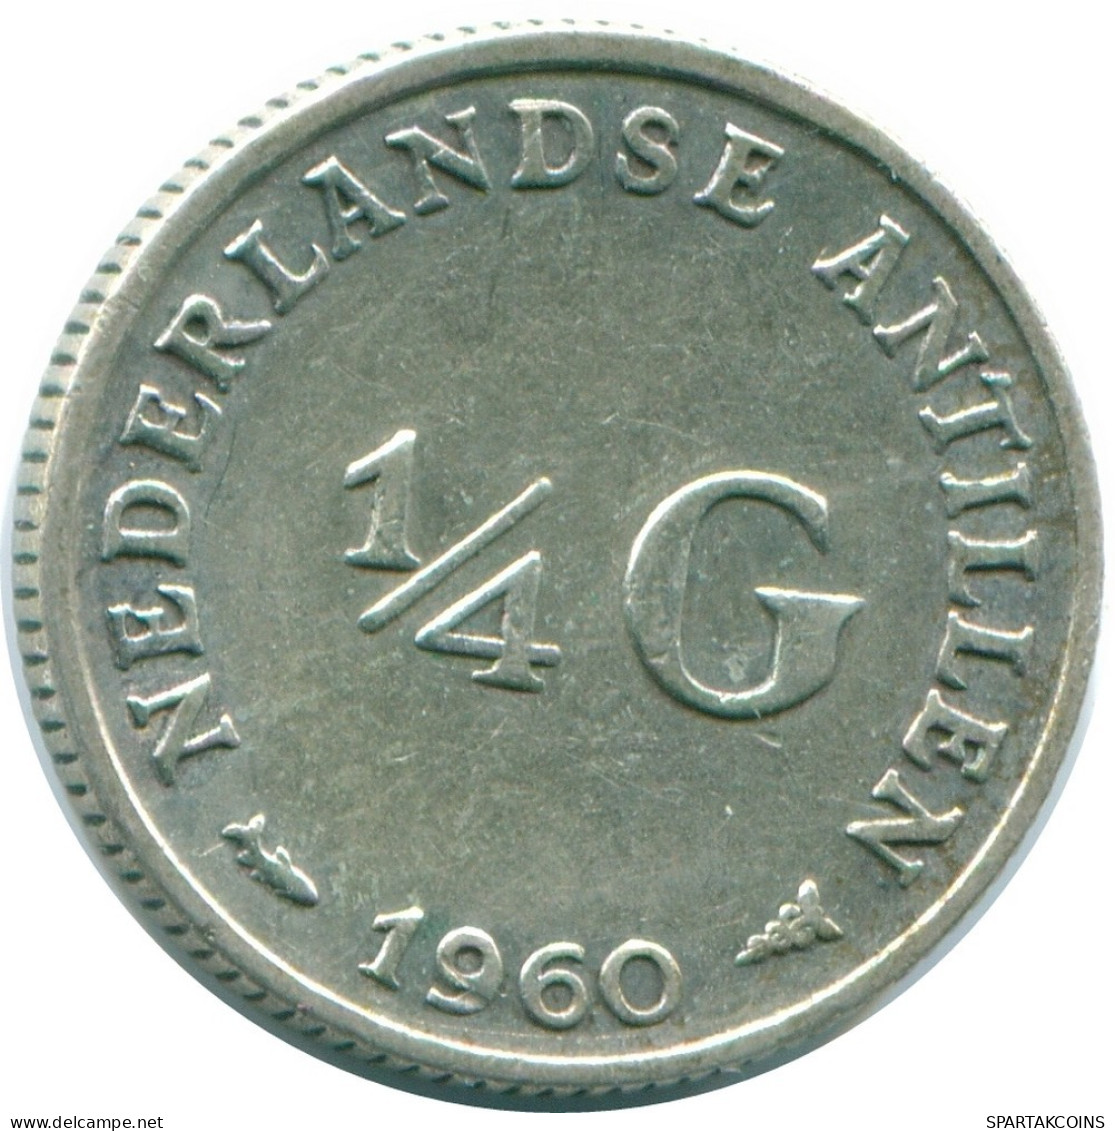 1/4 GULDEN 1960 NIEDERLÄNDISCHE ANTILLEN SILBER Koloniale Münze #NL11028.4.D.A - Niederländische Antillen